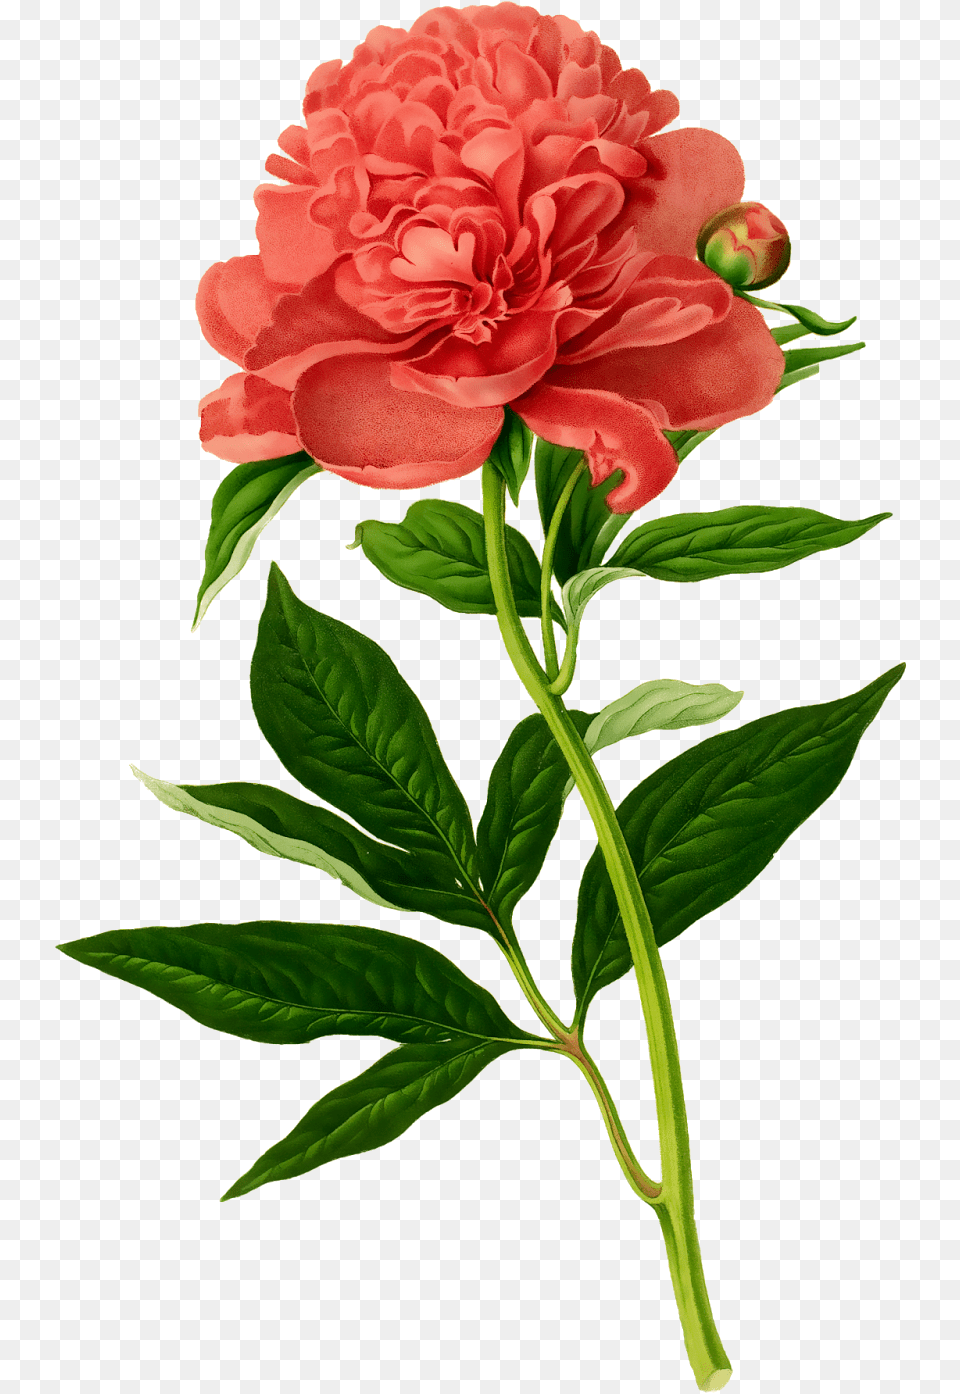 Vintage Floral Botanical Illustration Peonies Drawing, Flower, Plant, Rose, Carnation Free Png